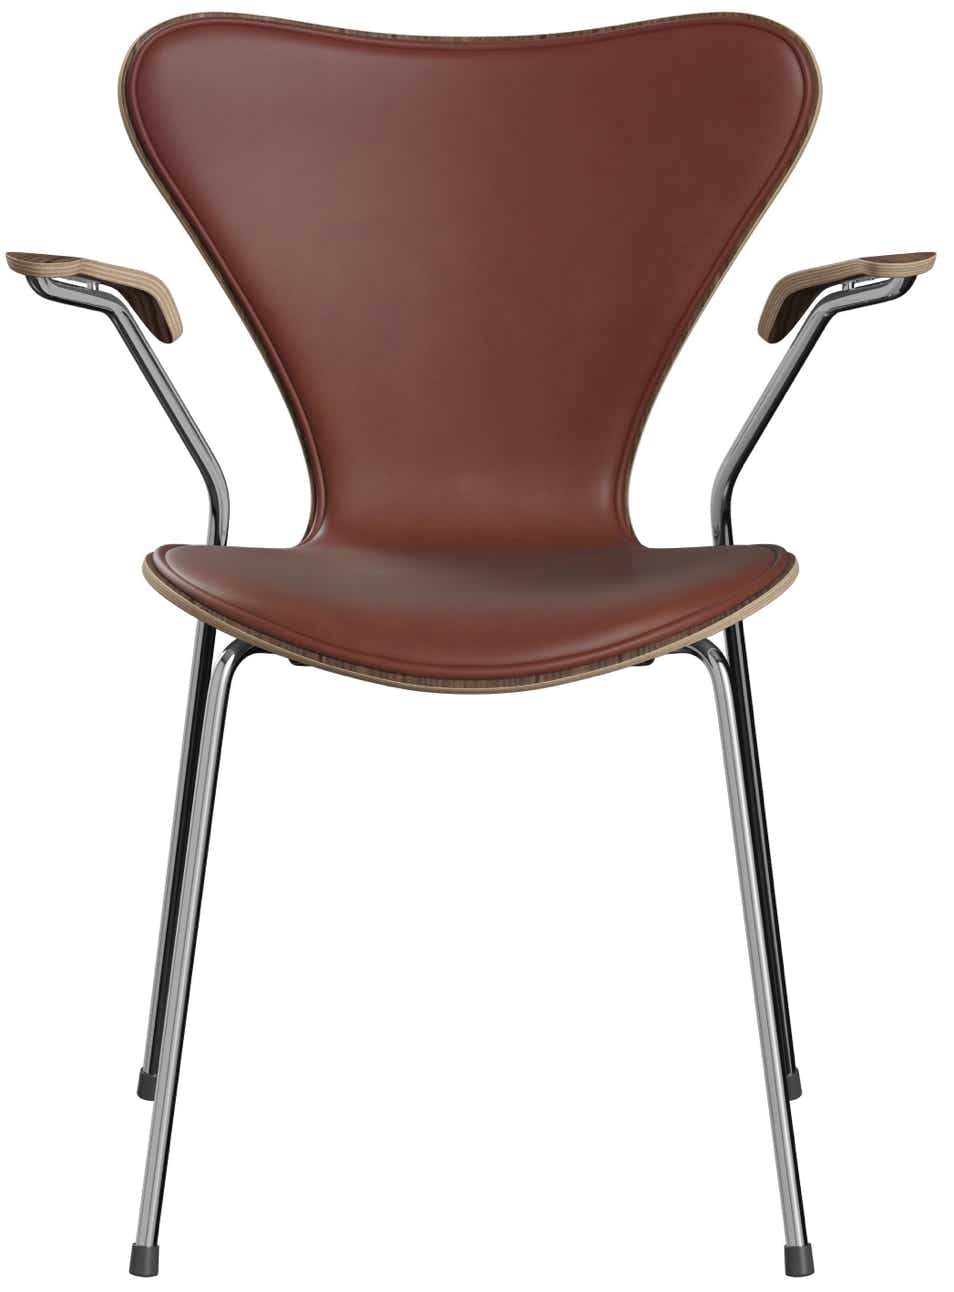 Chaise Série 7   Arne Jacobsen, 1955